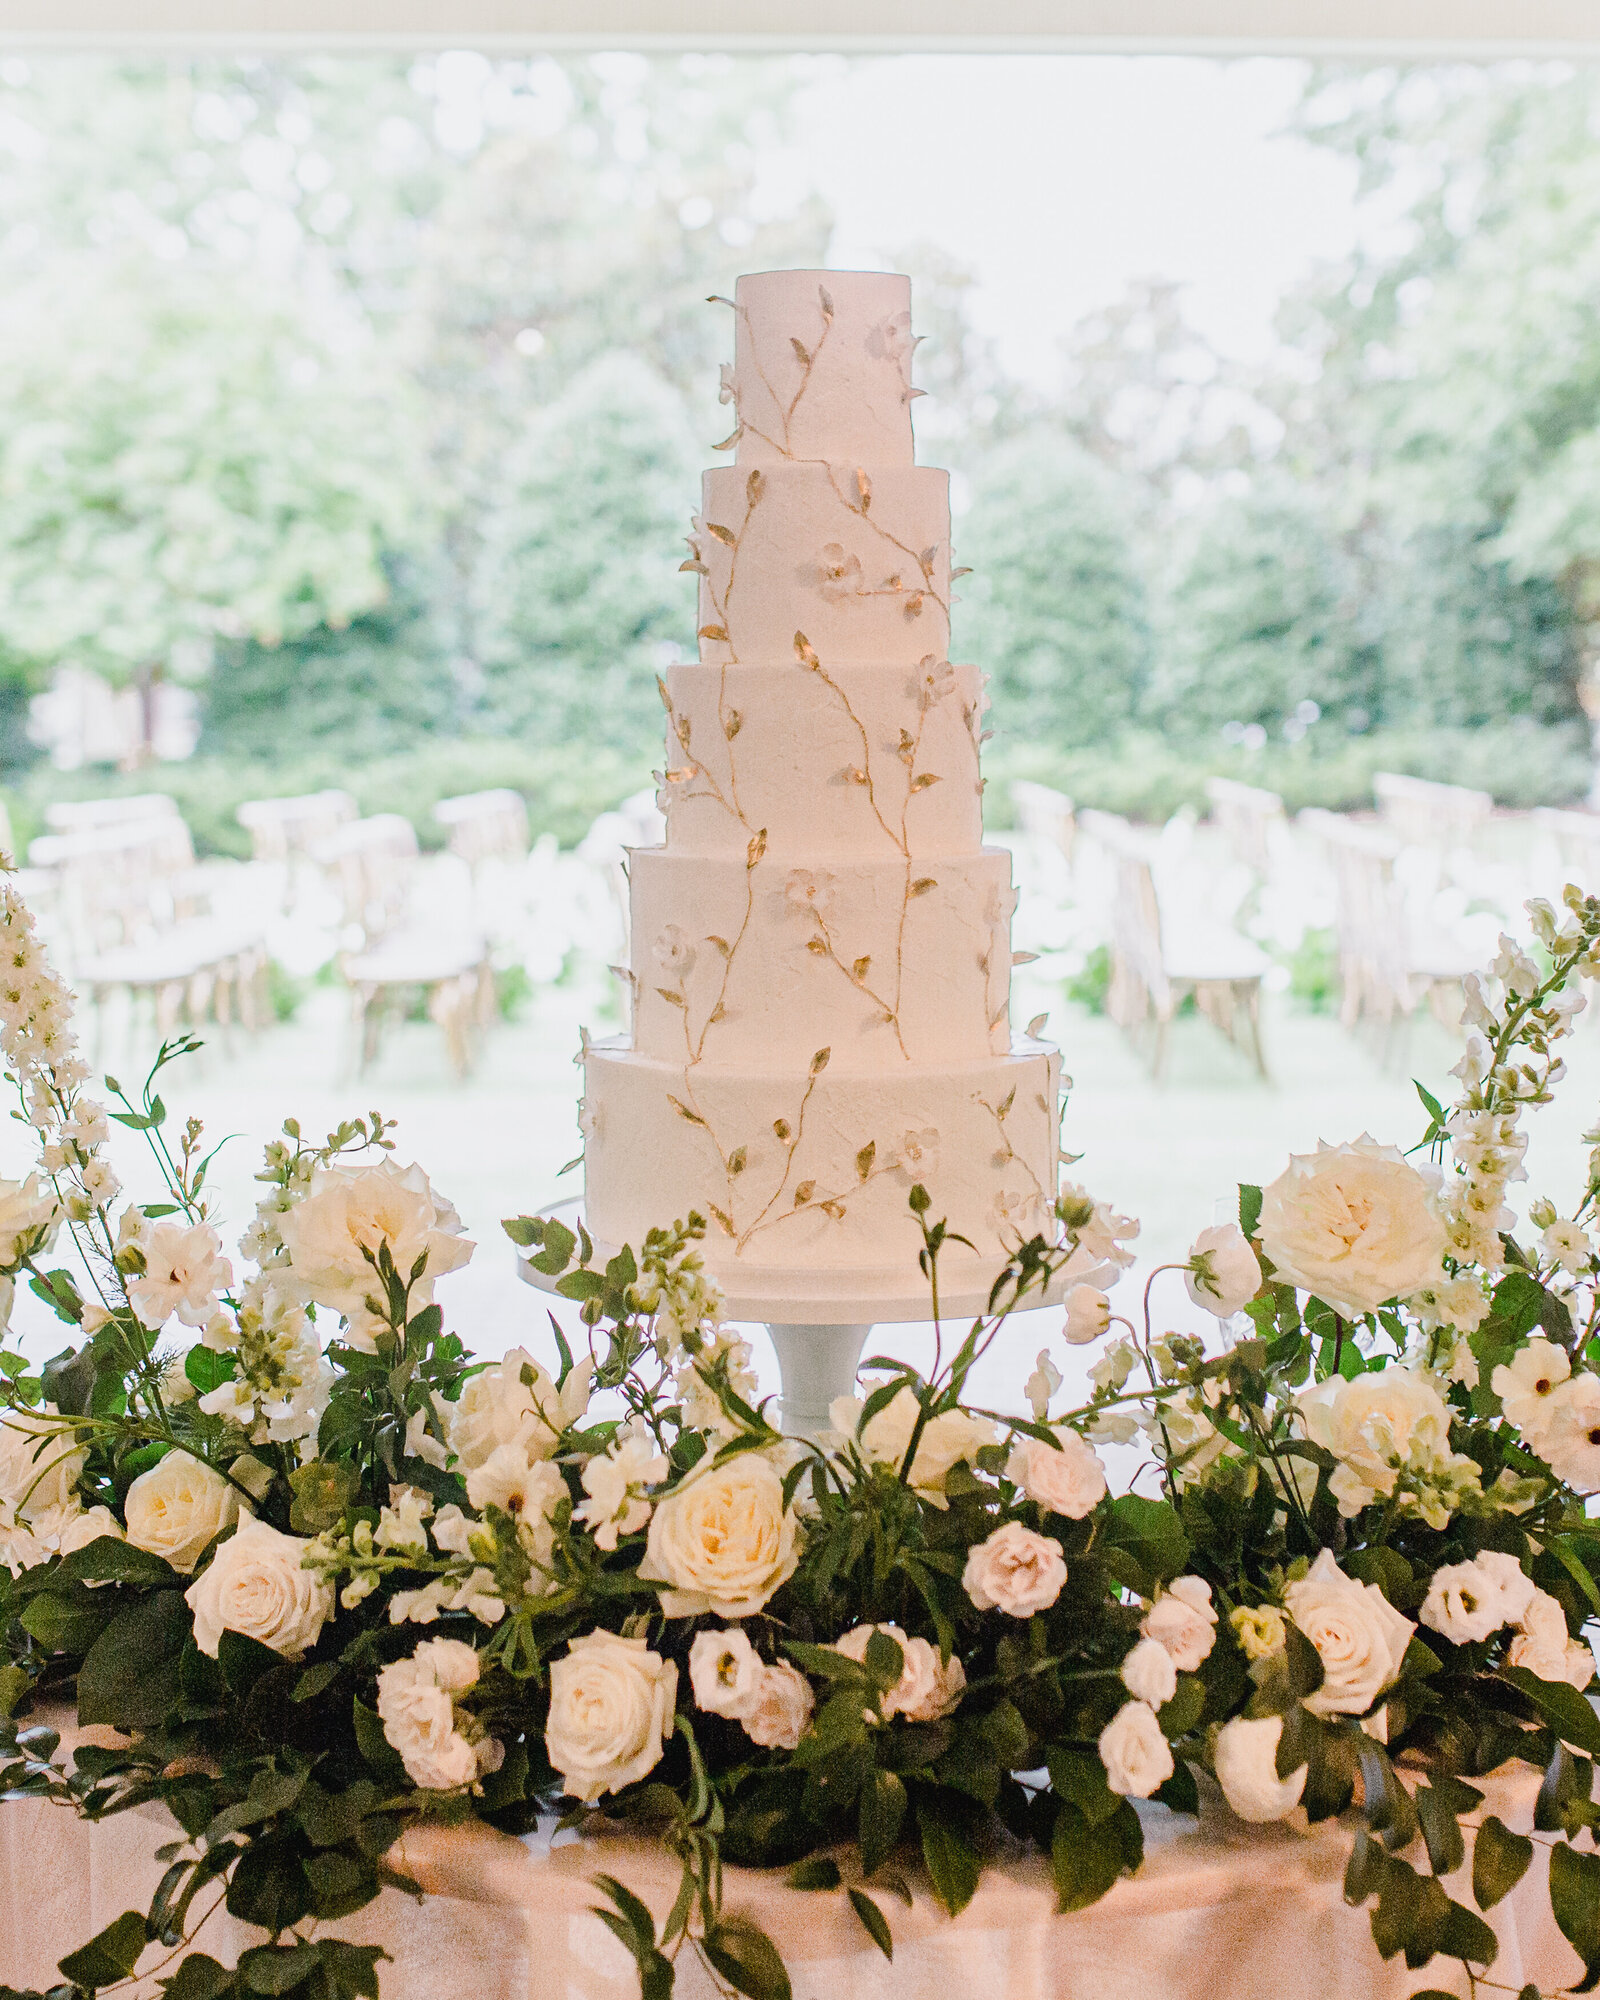 Garden-Wedding-Cake-Ashley-Cakes-48